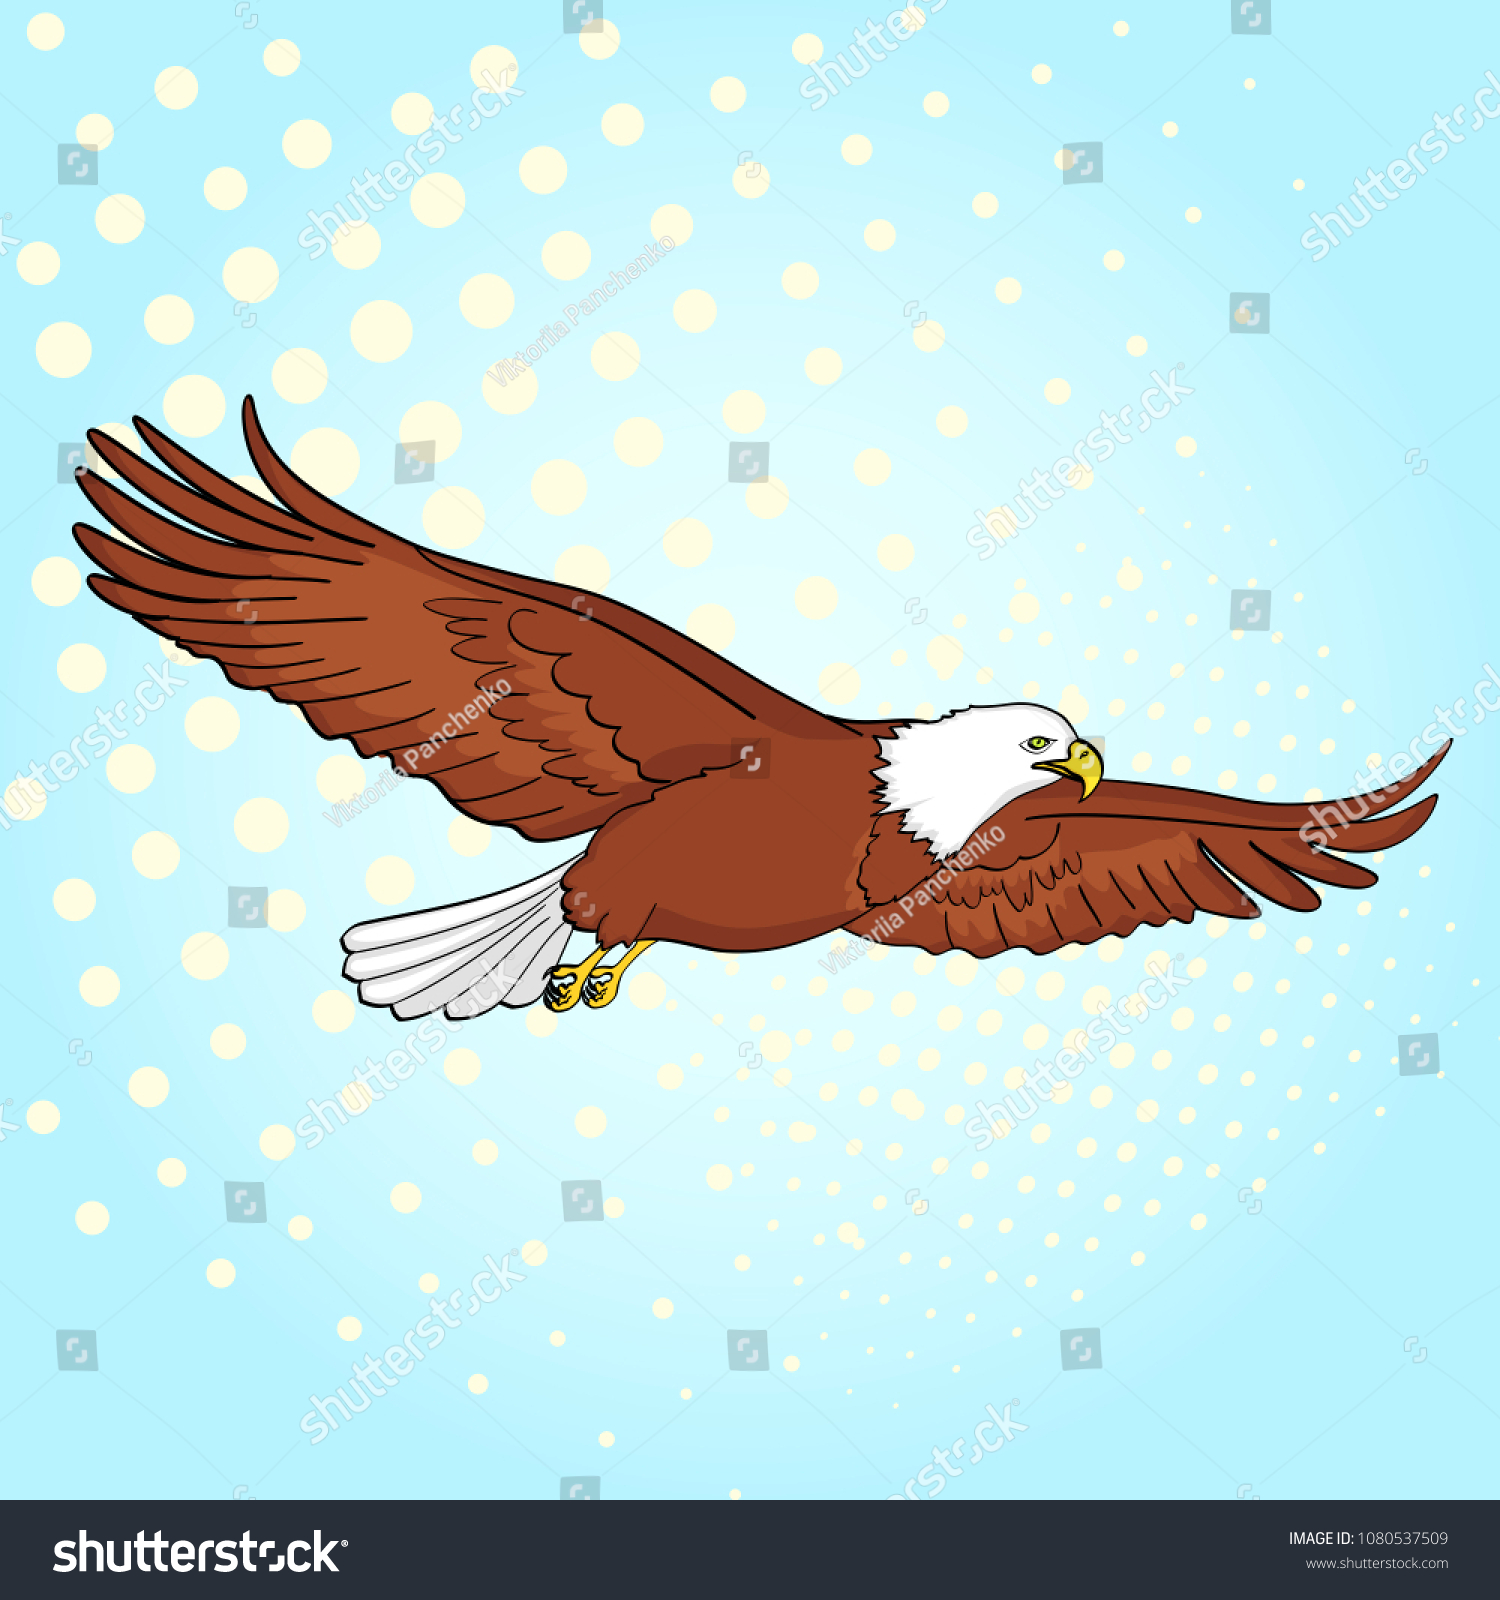 ポップアートの背景に鳥の鷲 鷹 レトロな漫画風のベクターイラスト のベクター画像素材 ロイヤリティフリー